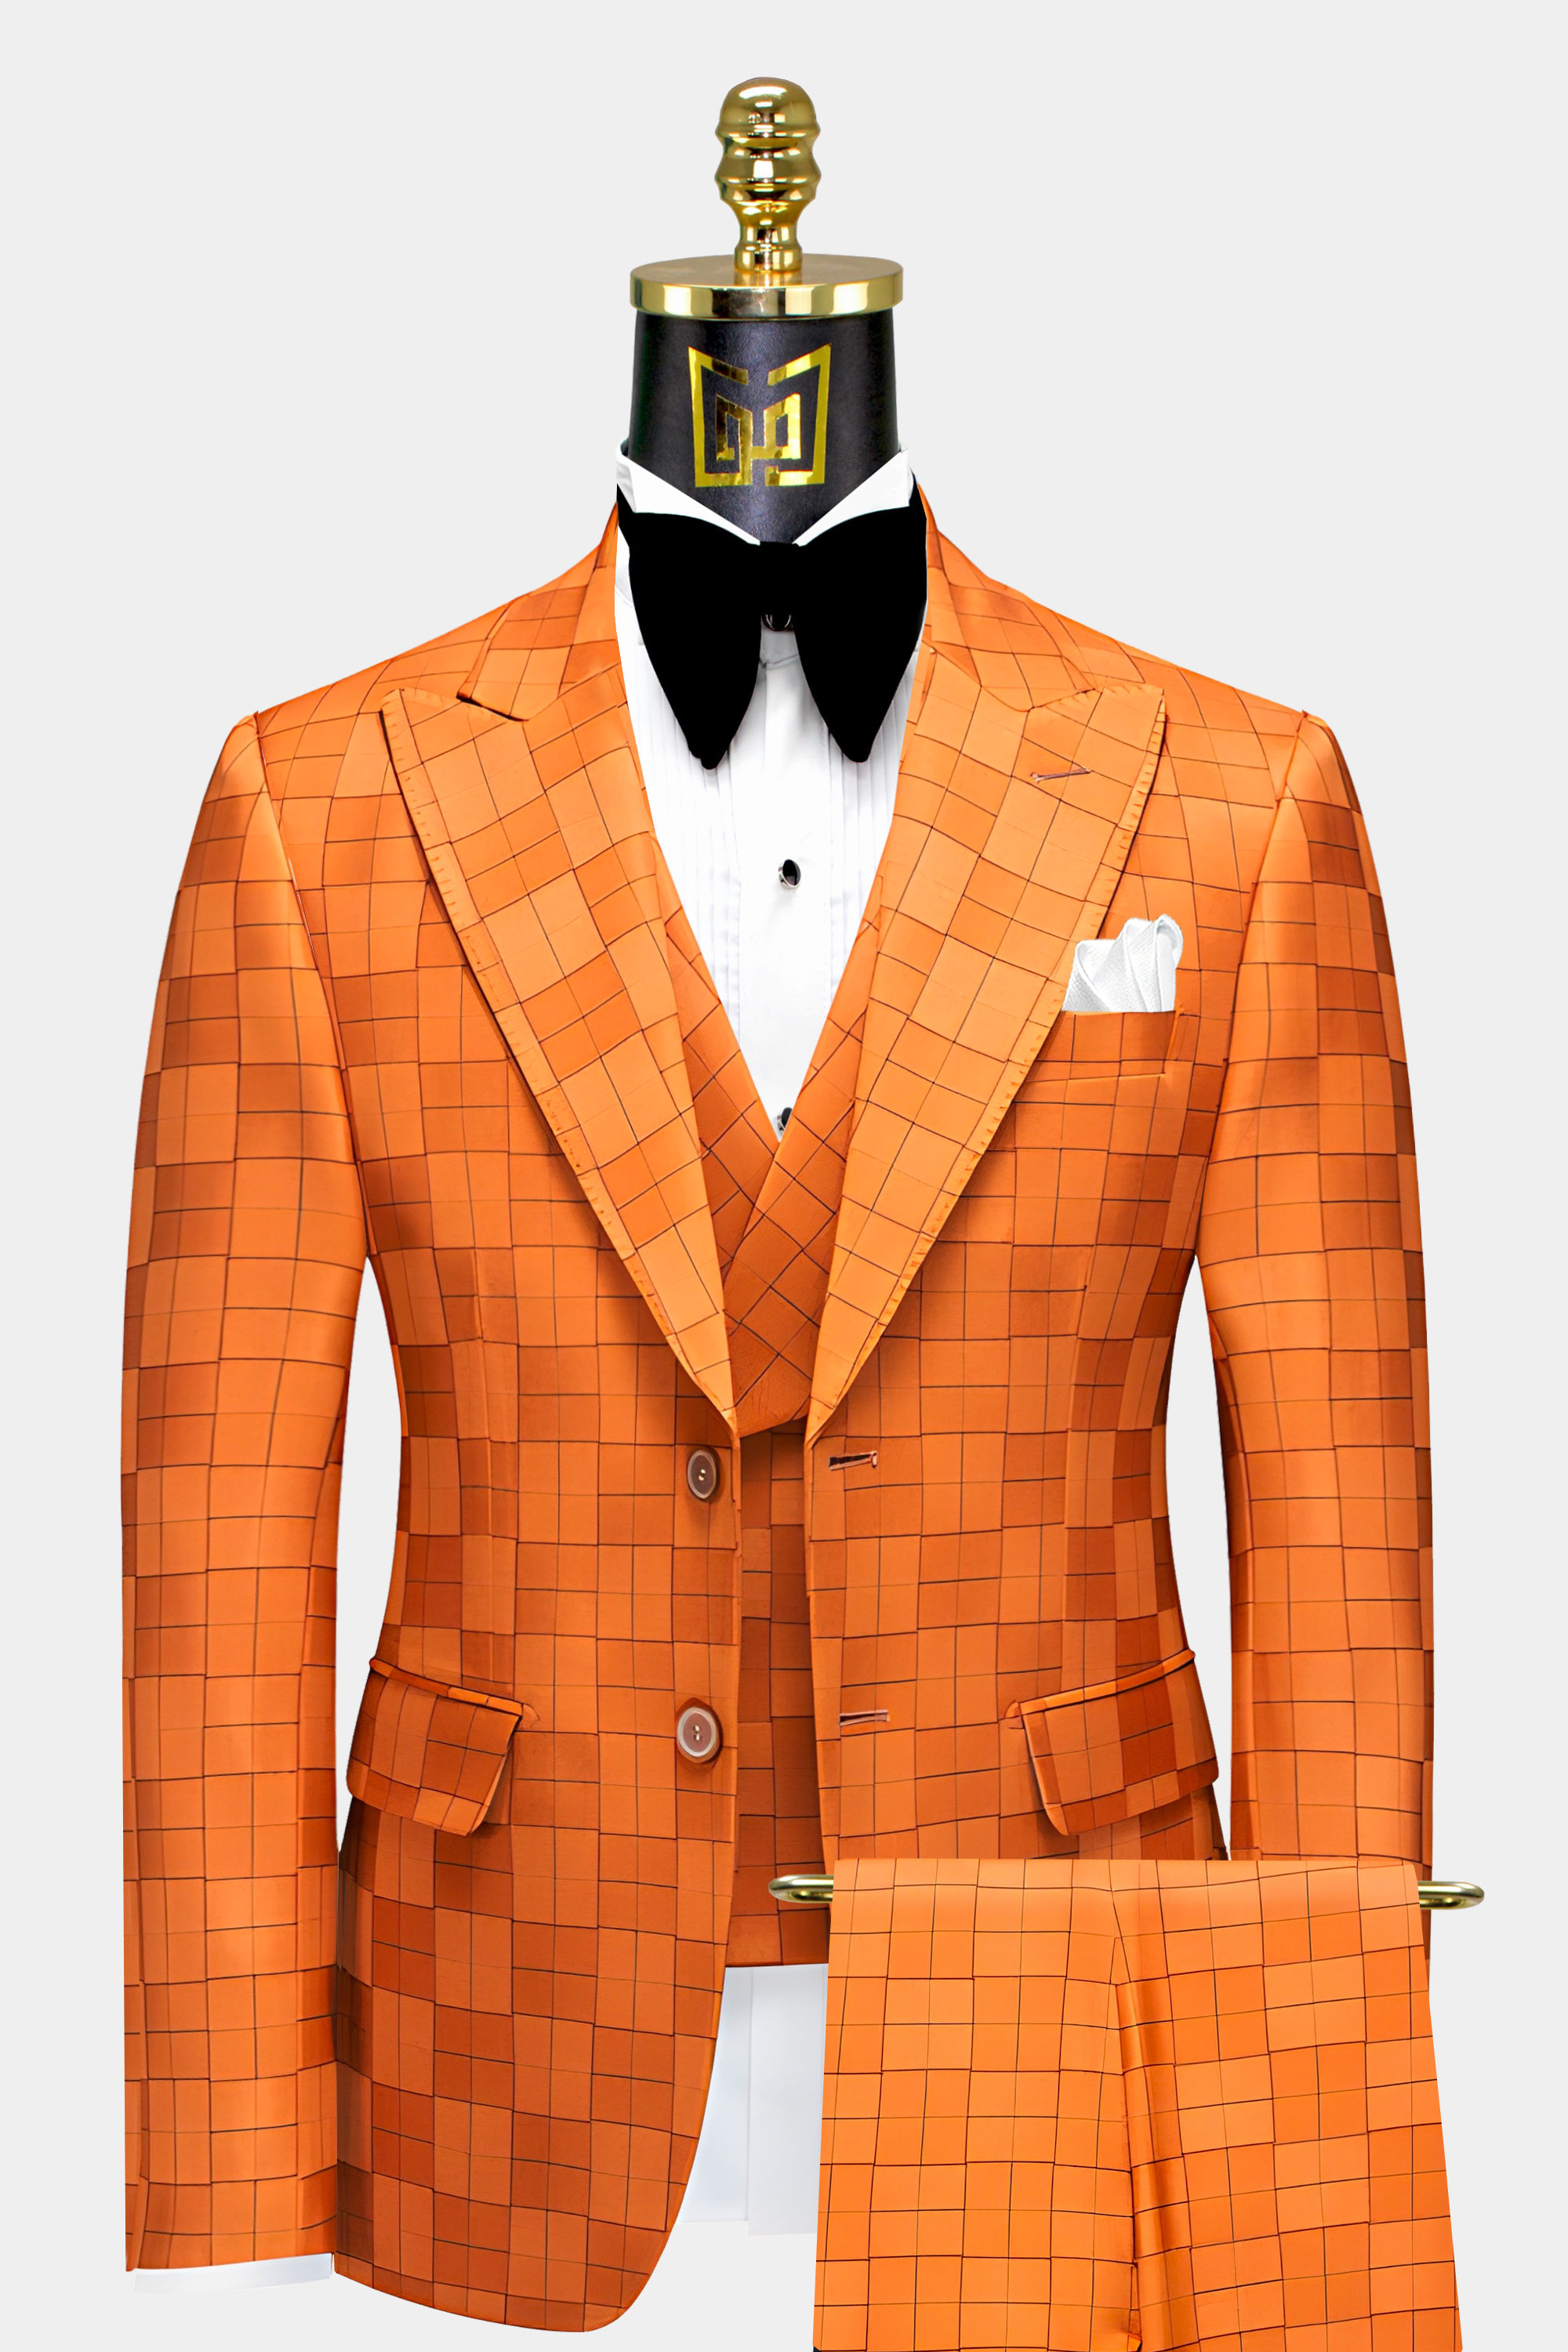 Mens-Orange-Windowpane-Suit-Groom-Wedding-Tuxedo-from-Gentlemansguru.com